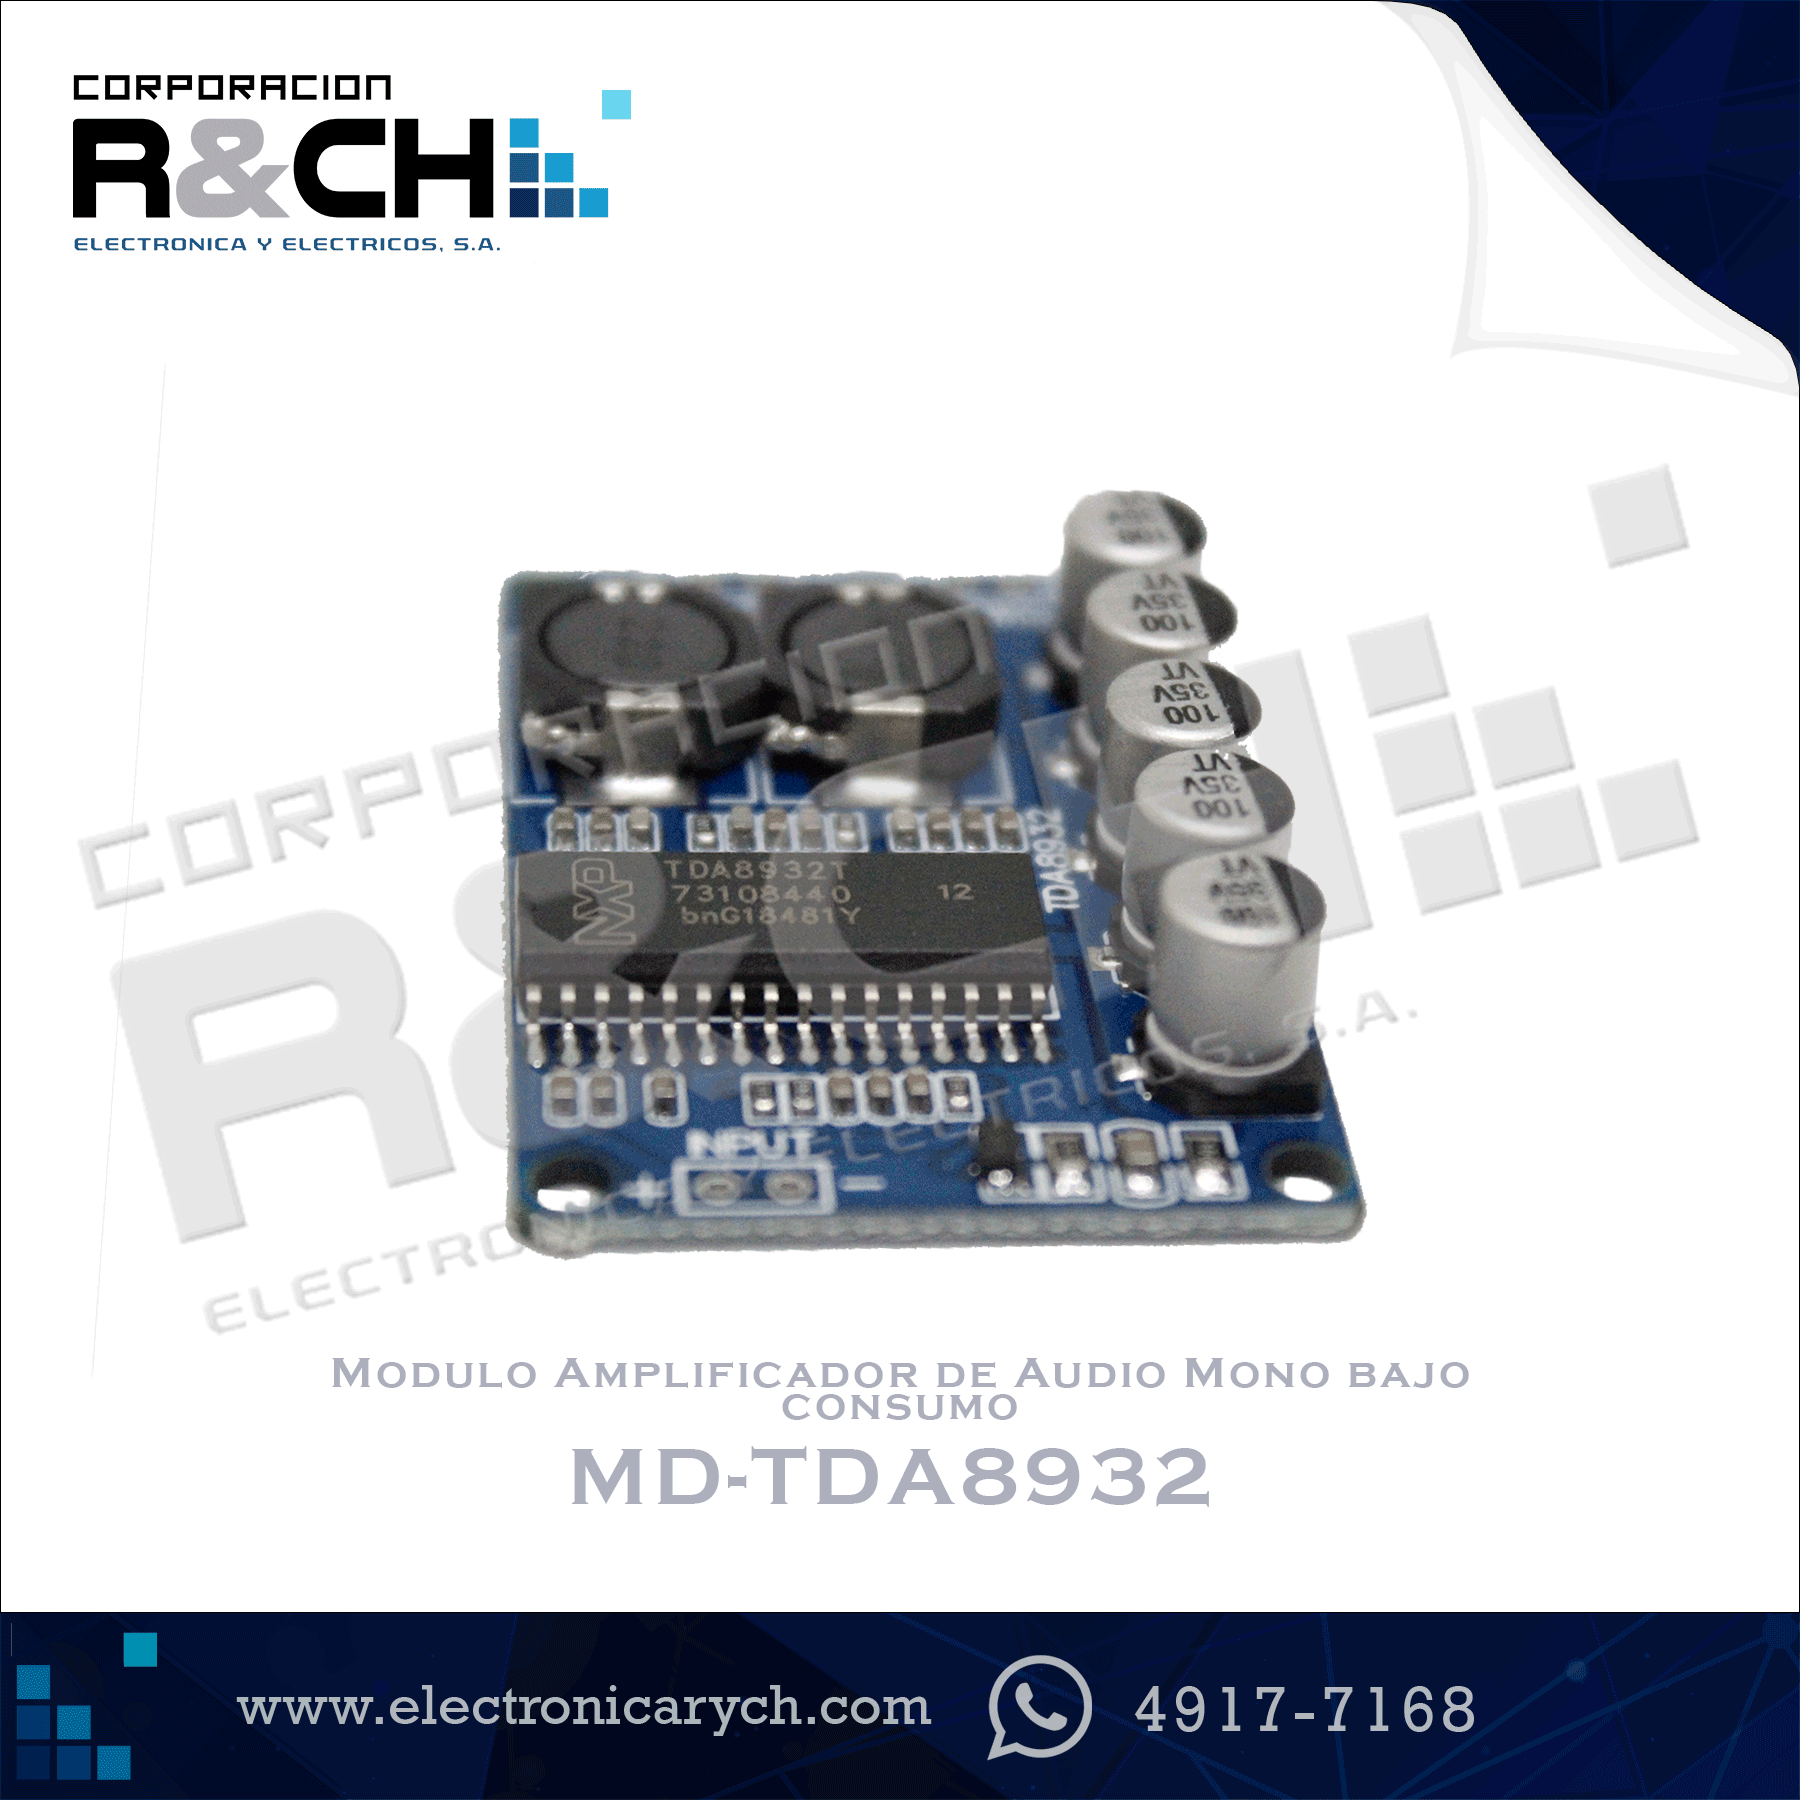 MD-TDA8932 Modulo Amplificador de Audio Mono  bajo consumo TDA8932 35W